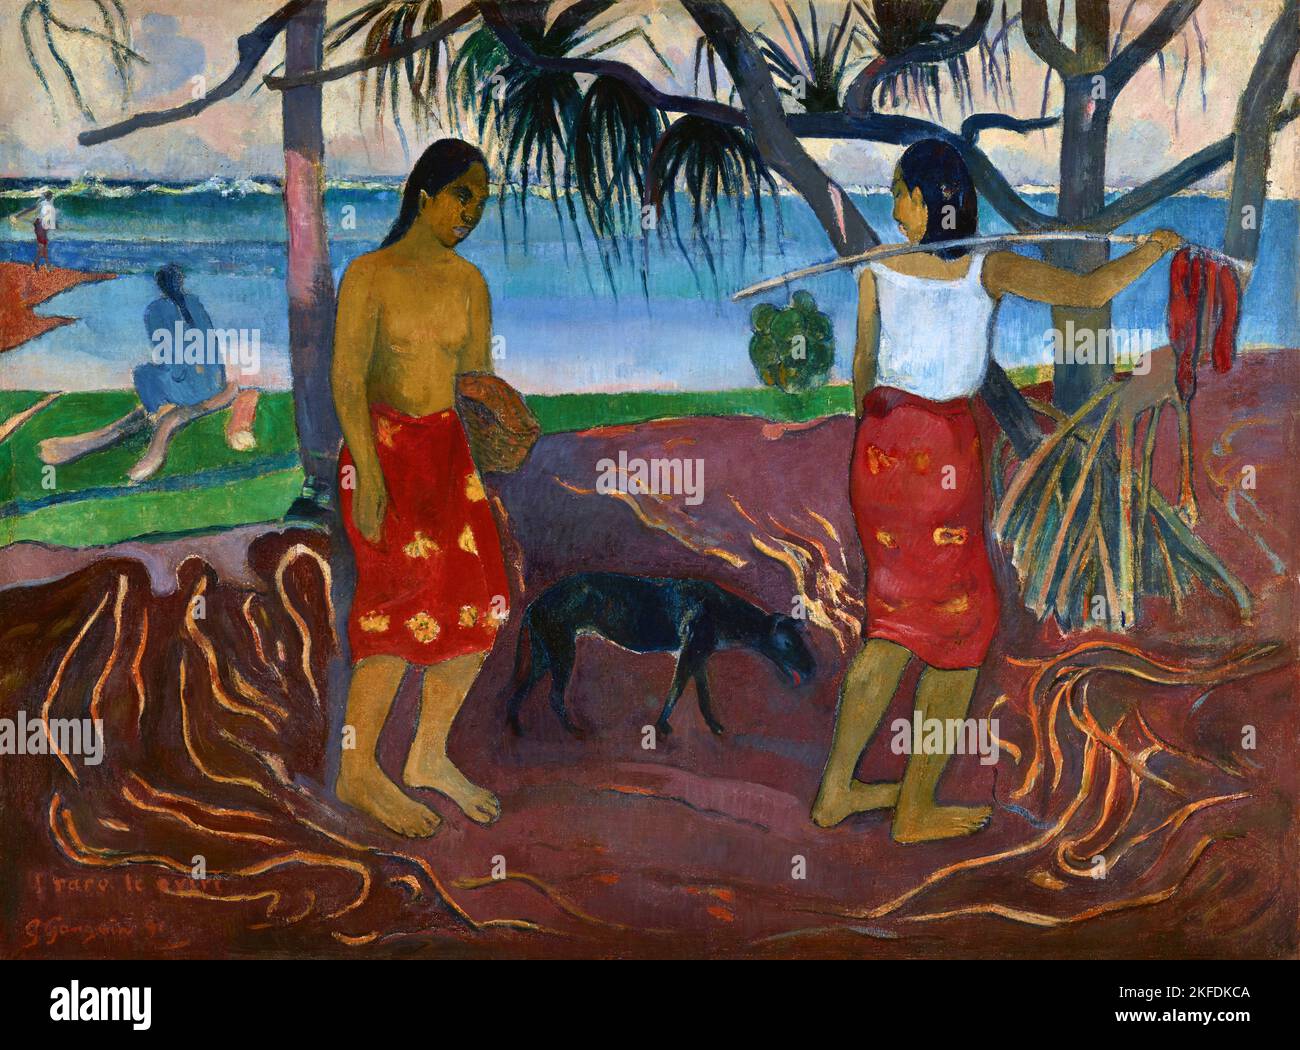 Tahití: 'I Raro Te Oviri' (bajo el pandanus). Óleo sobre lienzo de Paul Gauguin (7 de junio de 1848 - 8 de mayo de 1903), 1891. Paul Gauguin nació en París en 1848 y pasó parte de su infancia en Perú. Trabajó como corredor de bolsa con poco éxito, y sufrió ataques de depresión severa. También pintó. En 1891, Gauguin, frustrado por la falta de reconocimiento en casa y financieramente indigente, navegó a los trópicos para escapar de la civilización europea y 'todo lo que es artificial y convencional'. Su tiempo allí fue objeto de mucho interés tanto entonces como en los tiempos modernos. Foto de stock